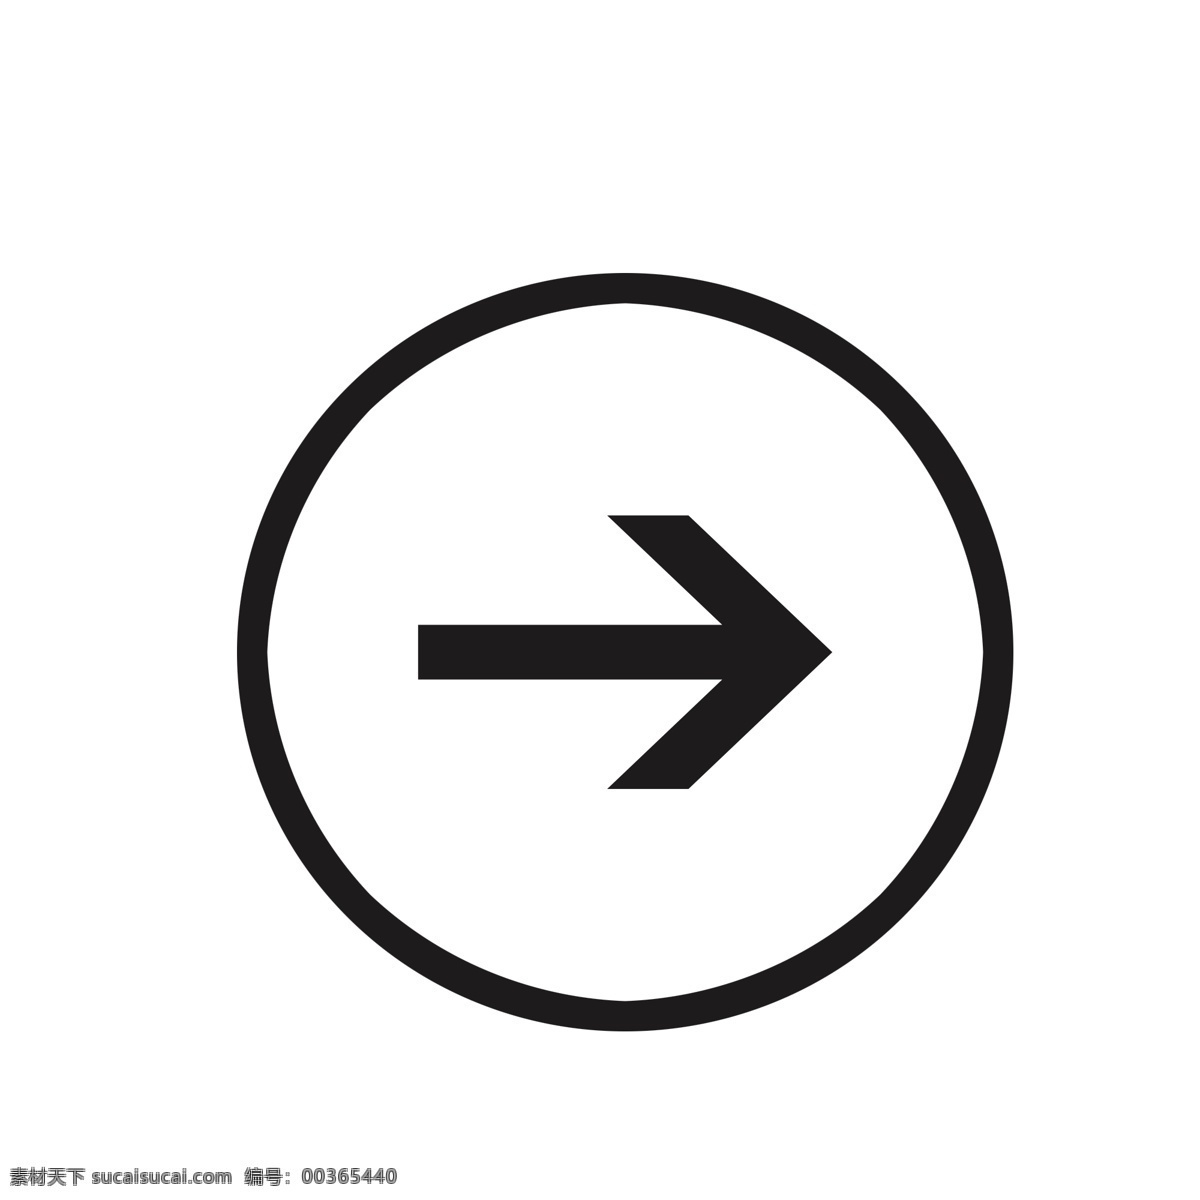 右 圆圈 黑色 箭头 图标 矢量 路标 导向标 黑色箭头 指示箭头 导向牌 指示牌 指示标 引导